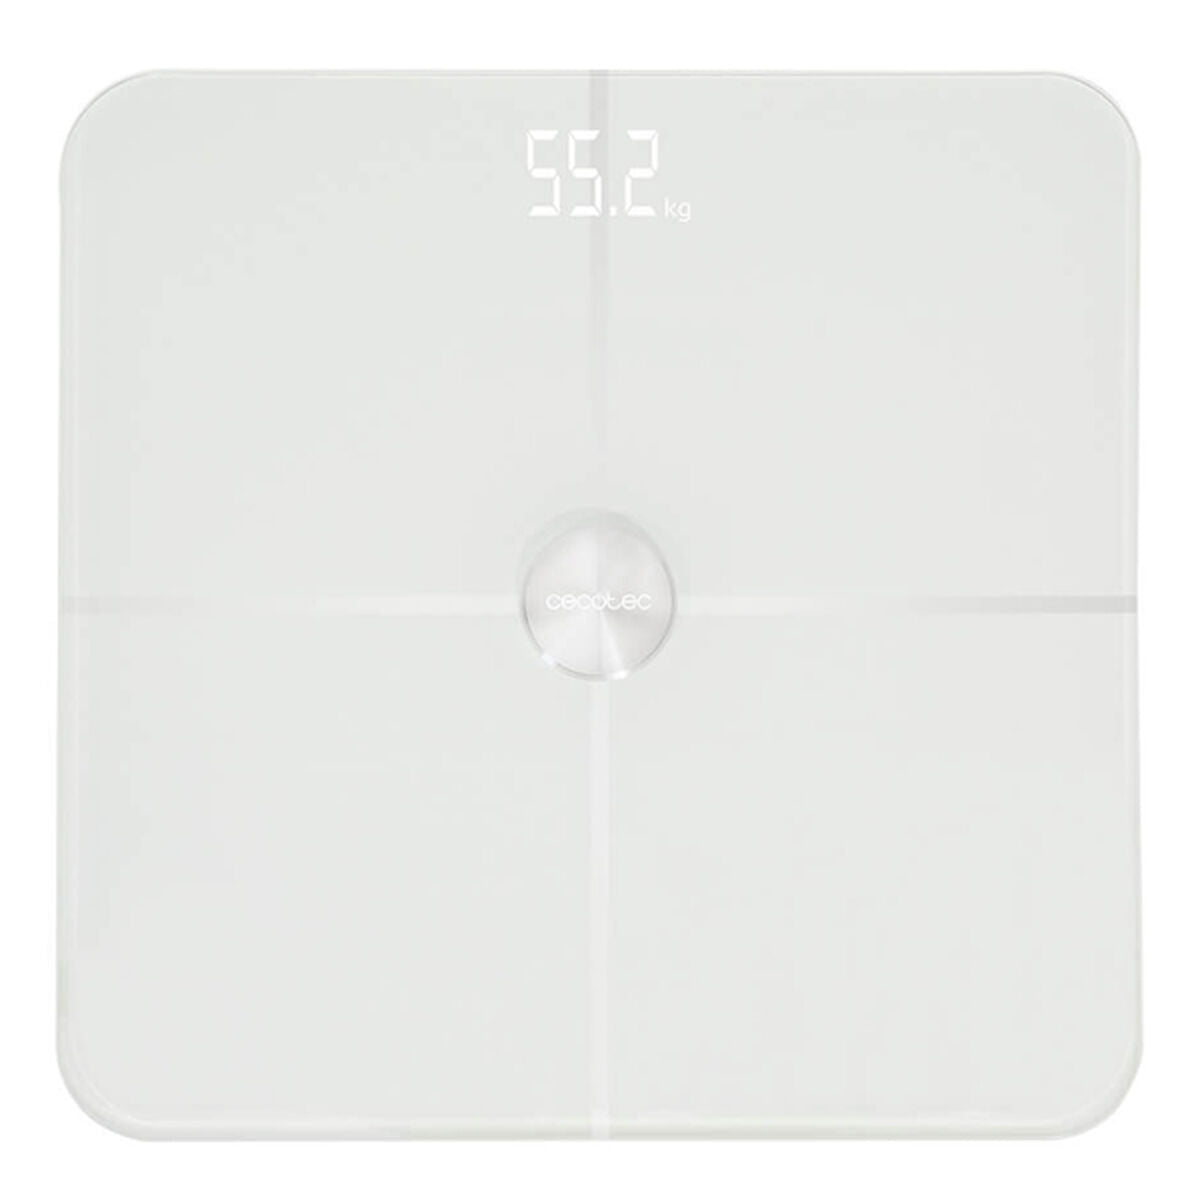 Digitale Personenwaage Cecotec Surface Precision 9600 Smart Healthy